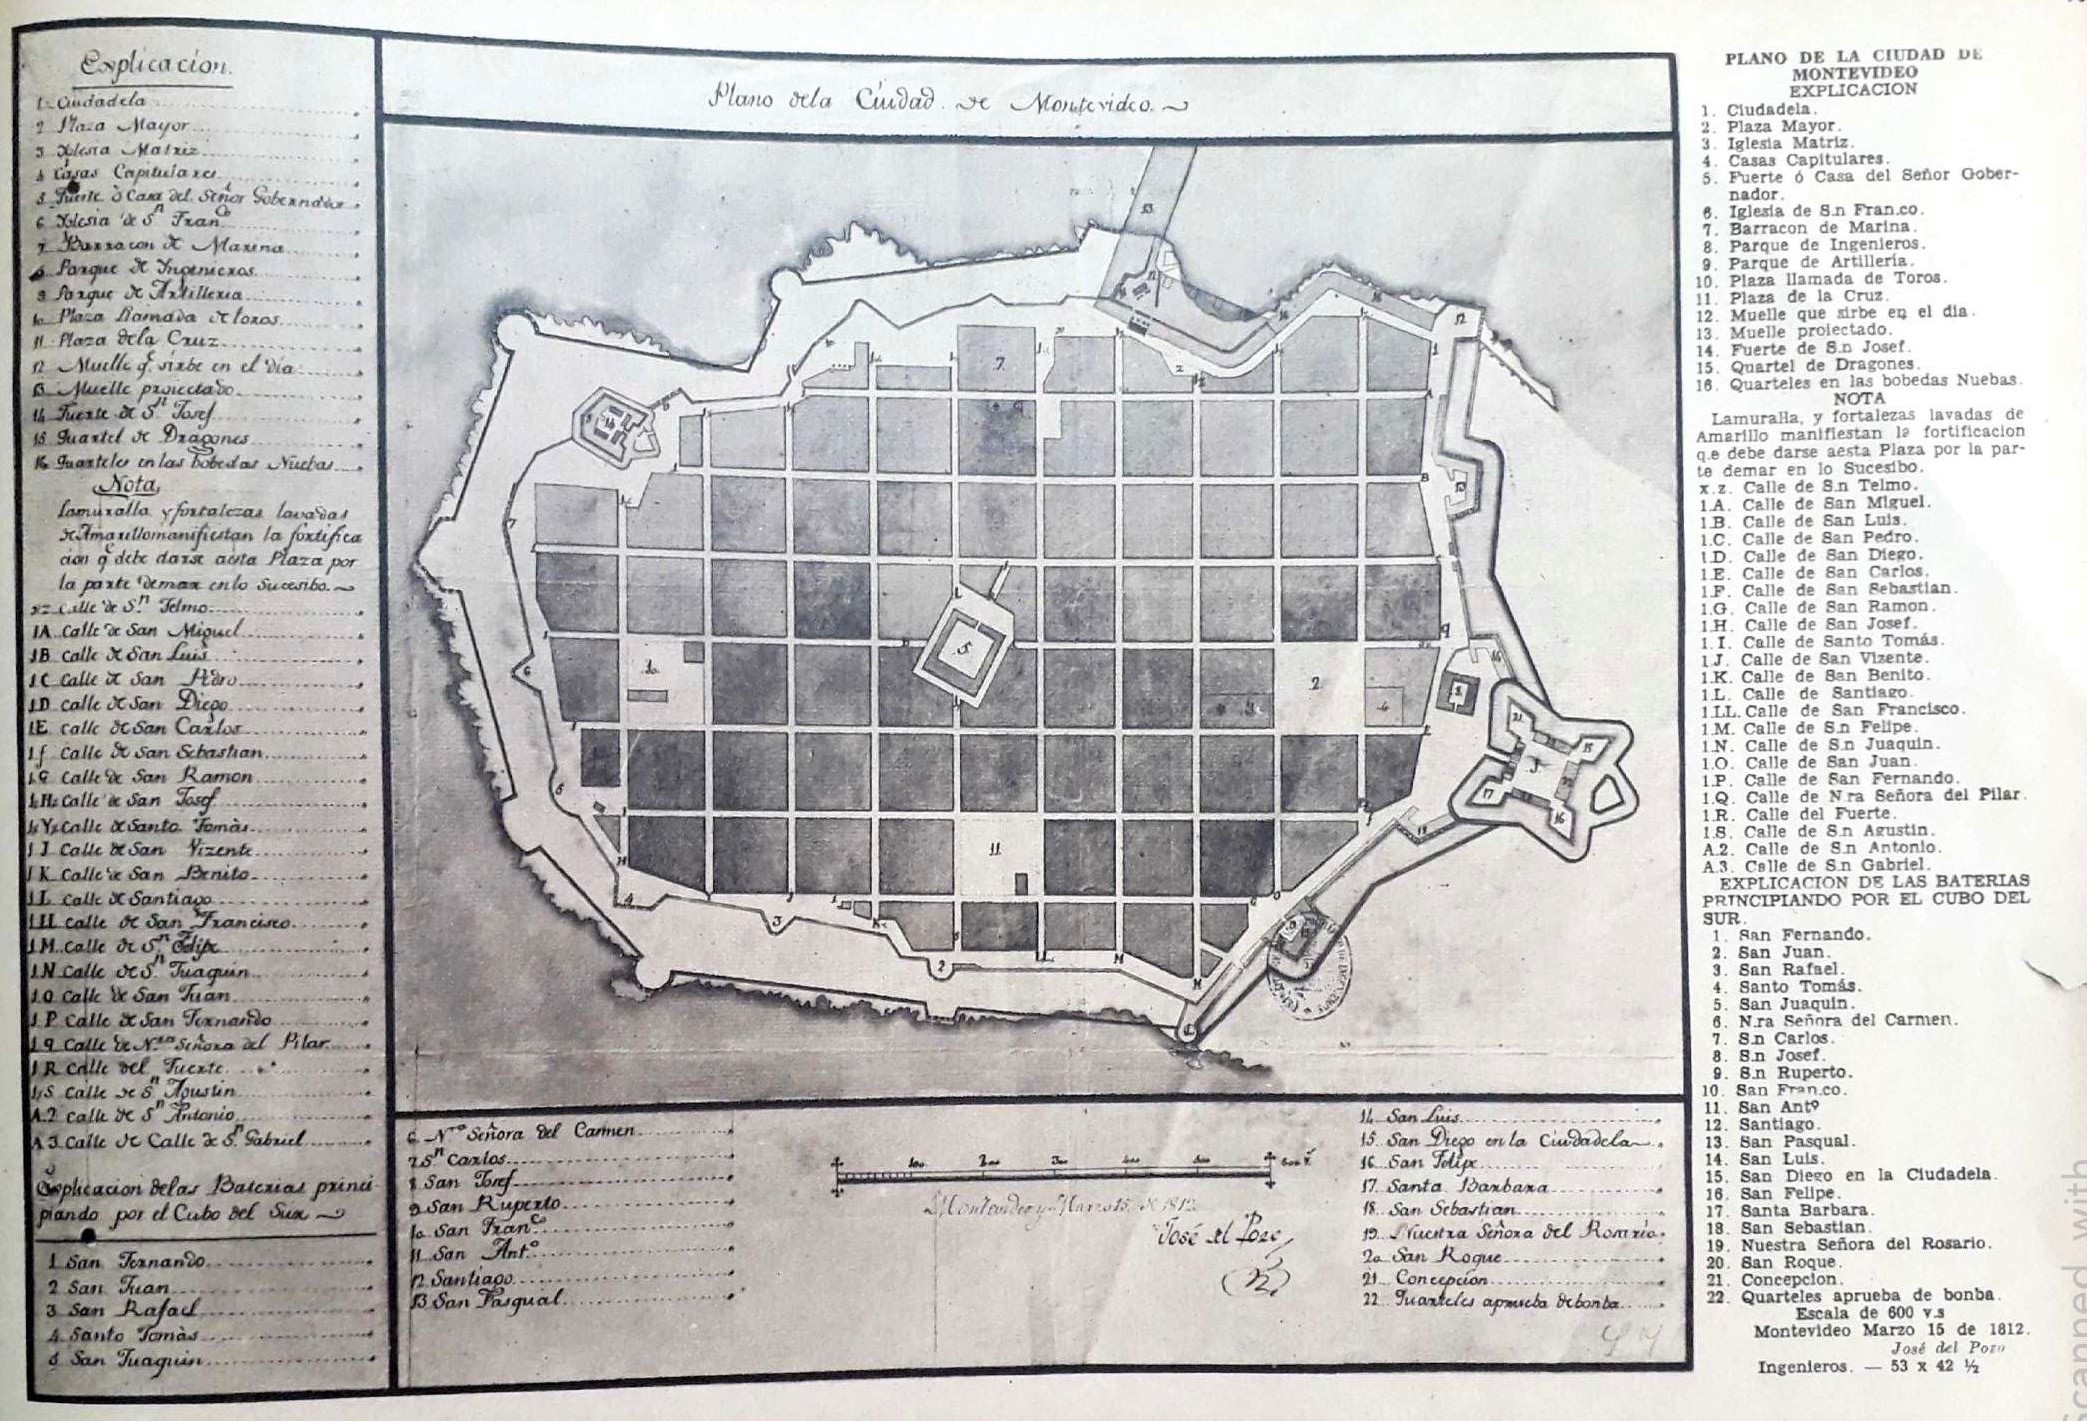 Plano
de la ciudad de Montevideo elaborado por José del Pozo y Maqui, 15
de marzo de 181235